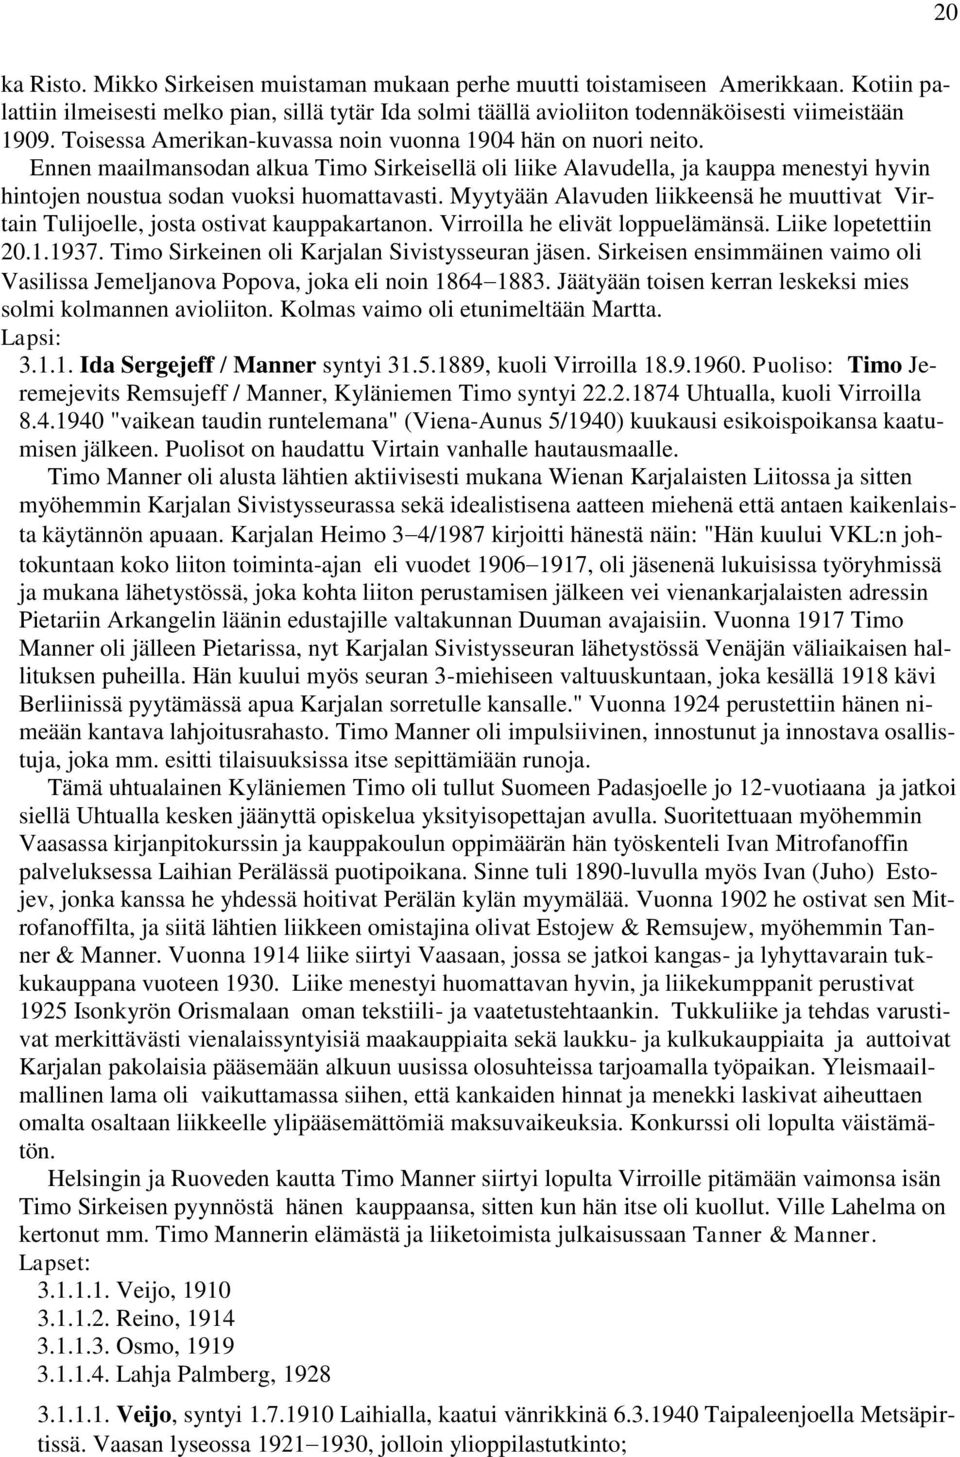 Myytyään Alavuden liikkeensä he muuttivat Virtain Tulijoelle, josta ostivat kauppakartanon. Virroilla he elivät loppuelämänsä. Liike lopetettiin 20.1.1937.